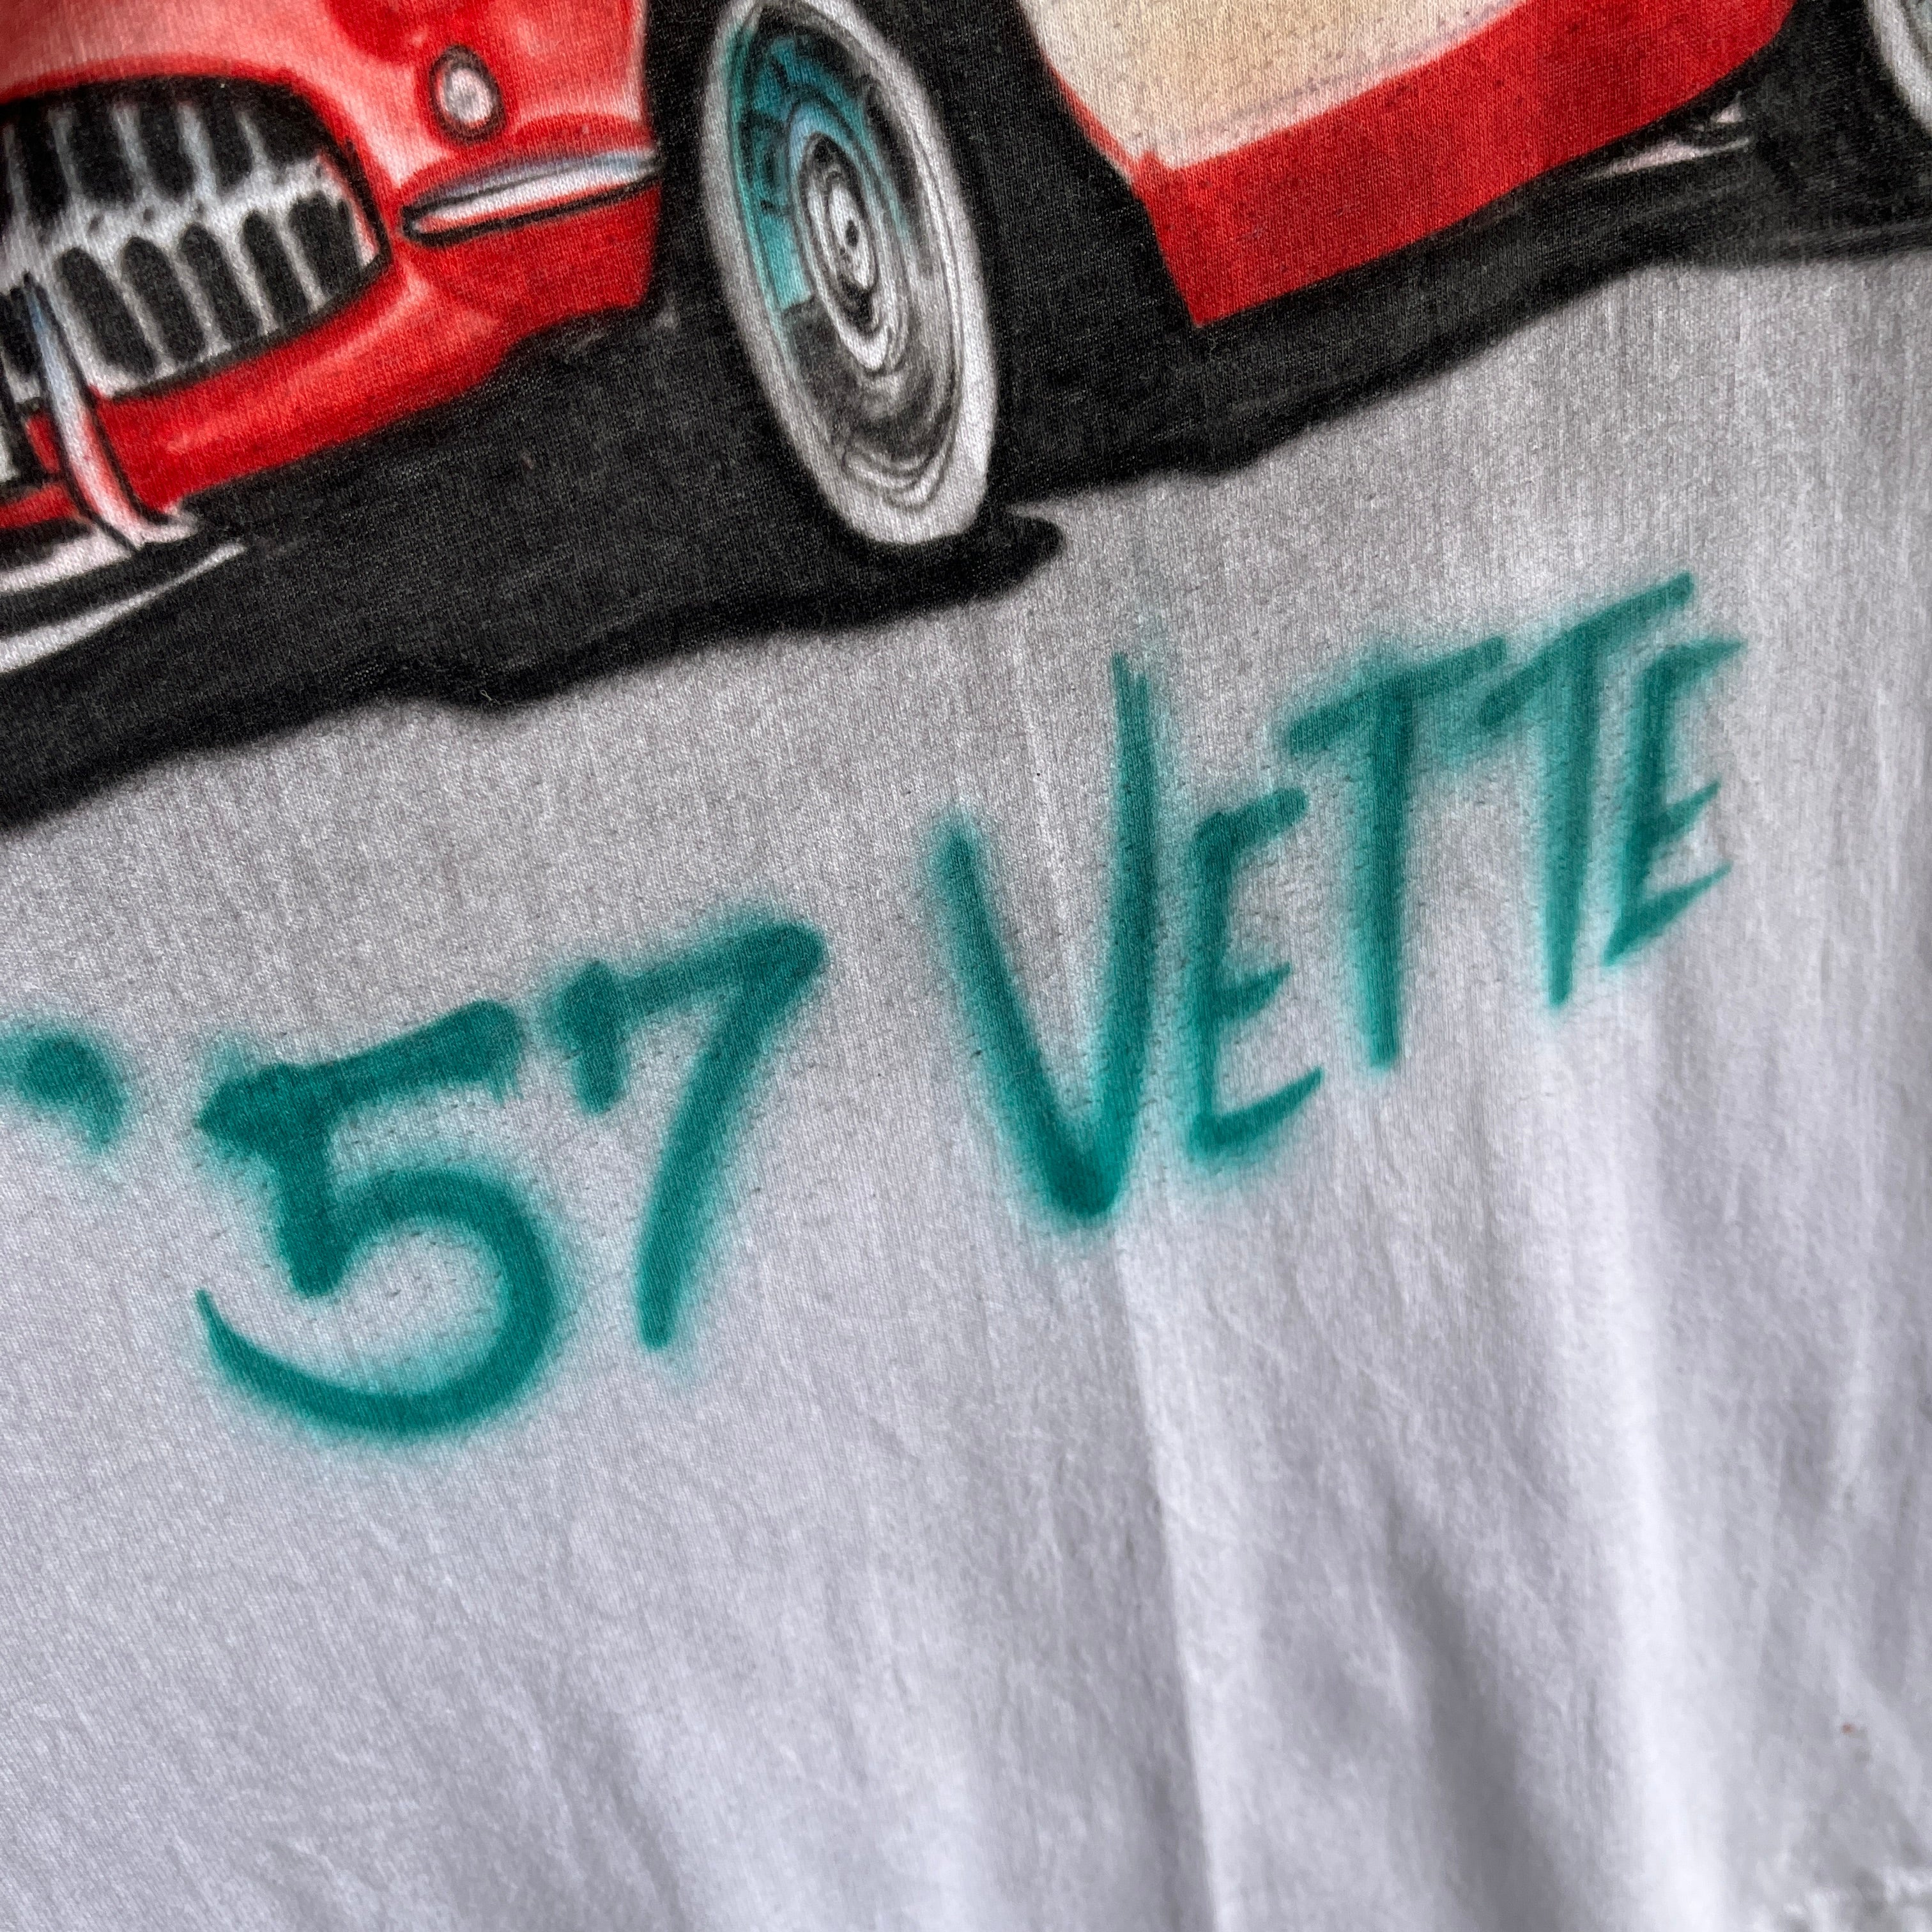 2000s DIY '57 Vette - Airbrush Corvette T-Shirt